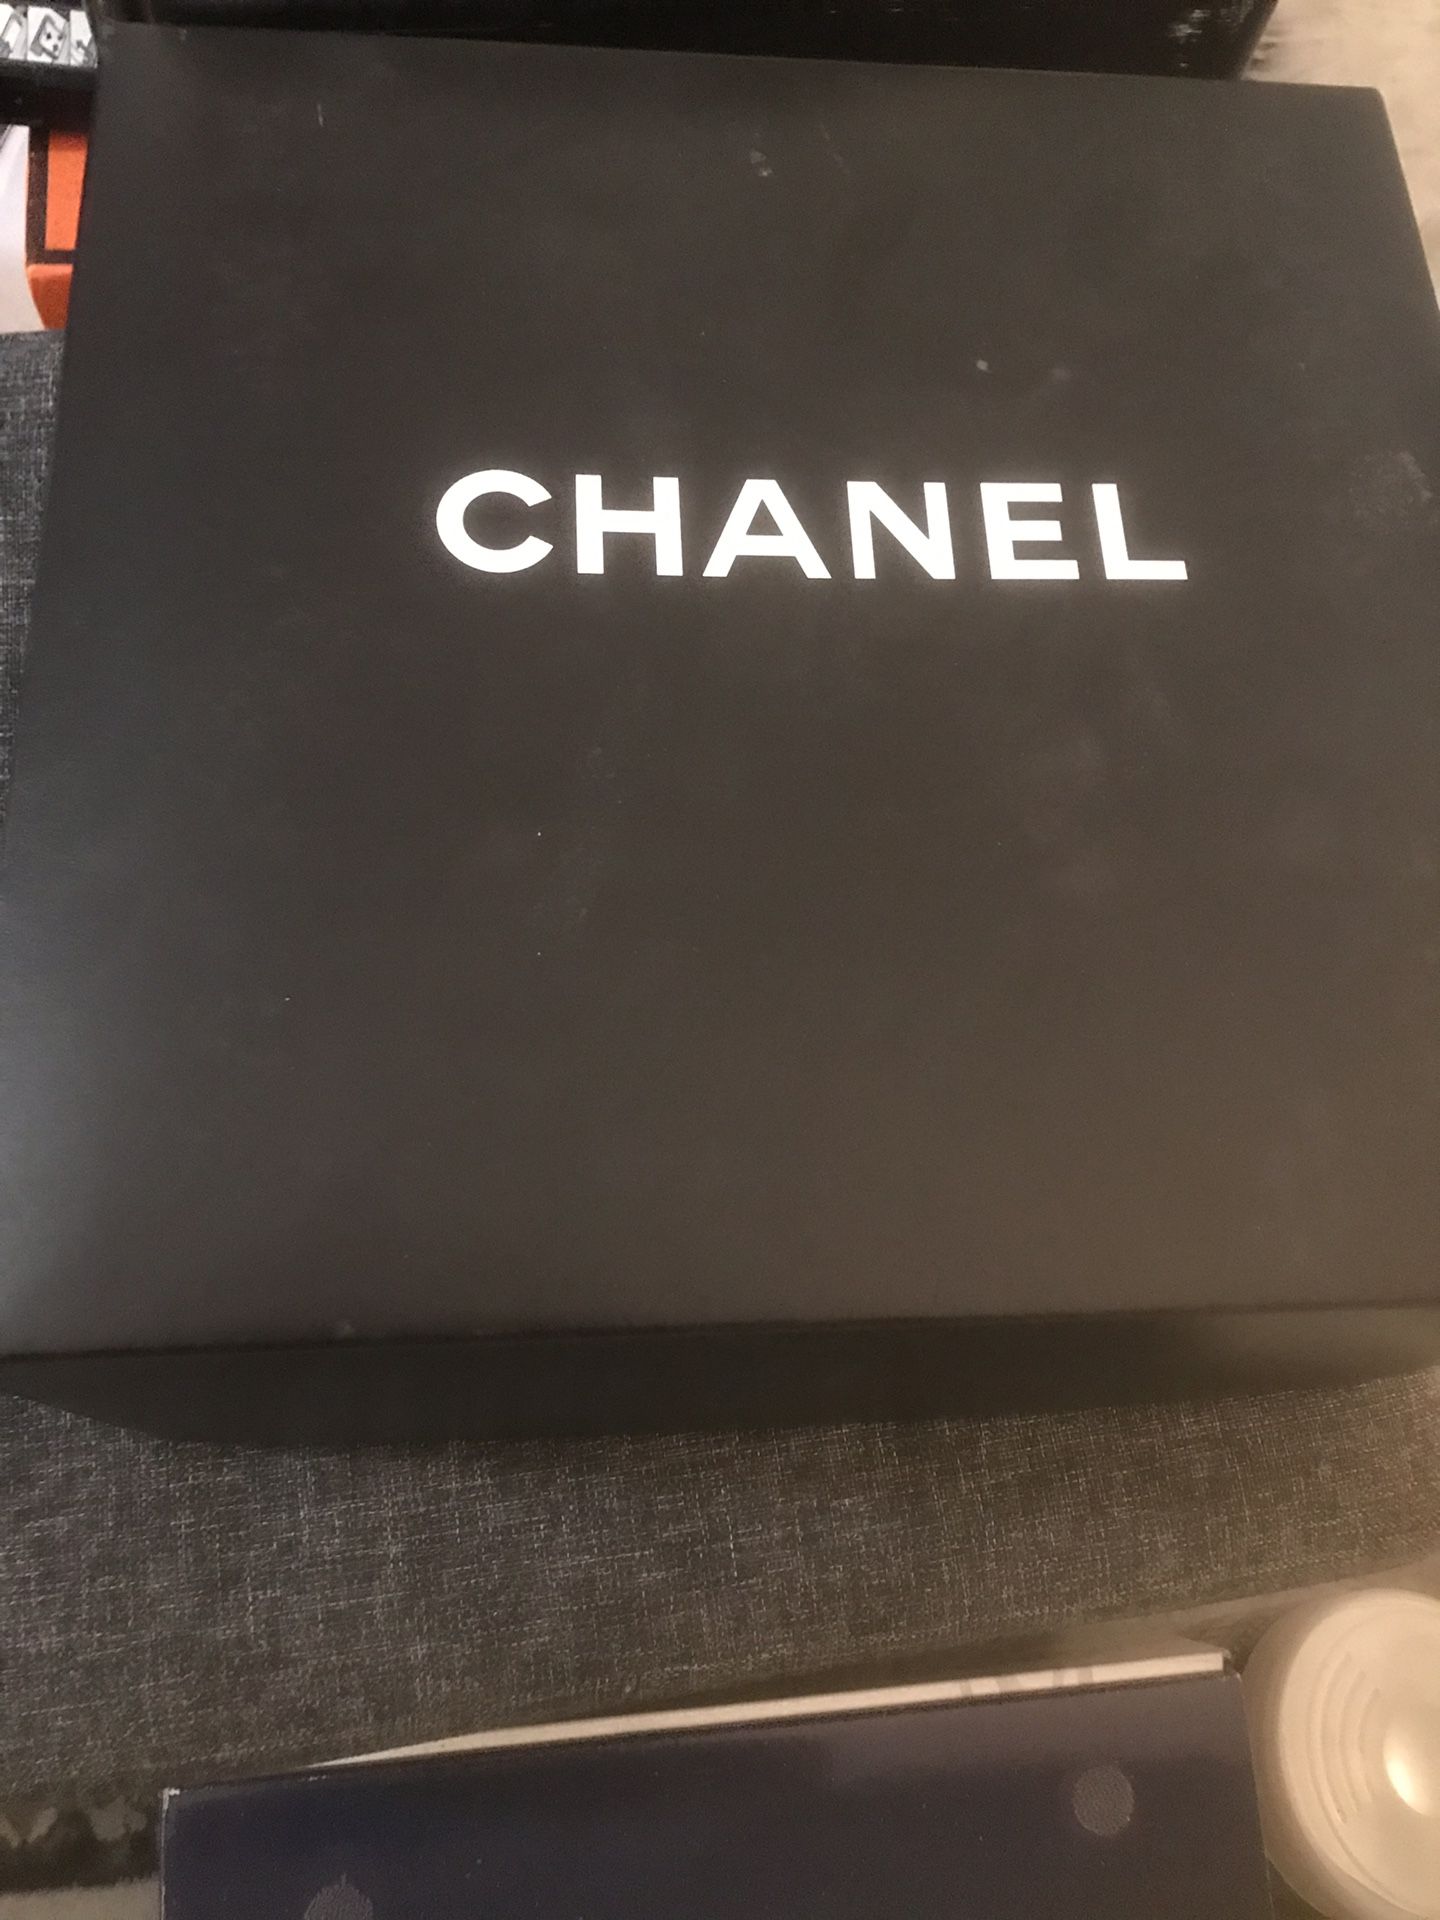 Chanel flapbag original box and paper bag